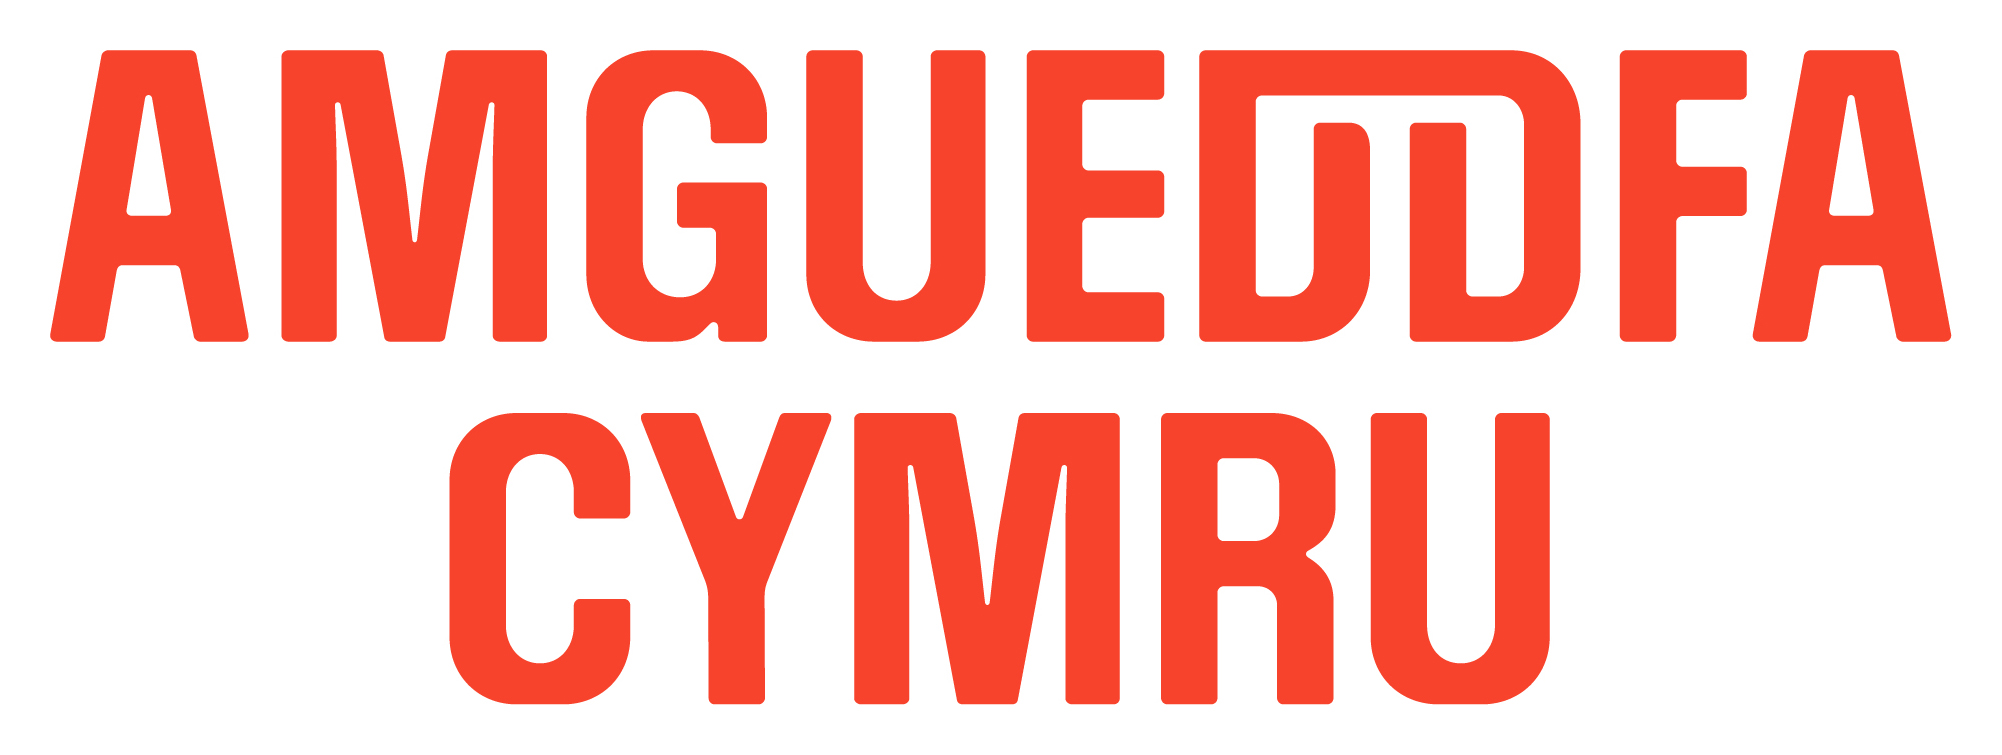 Amgueddfa Logo Red Rgb